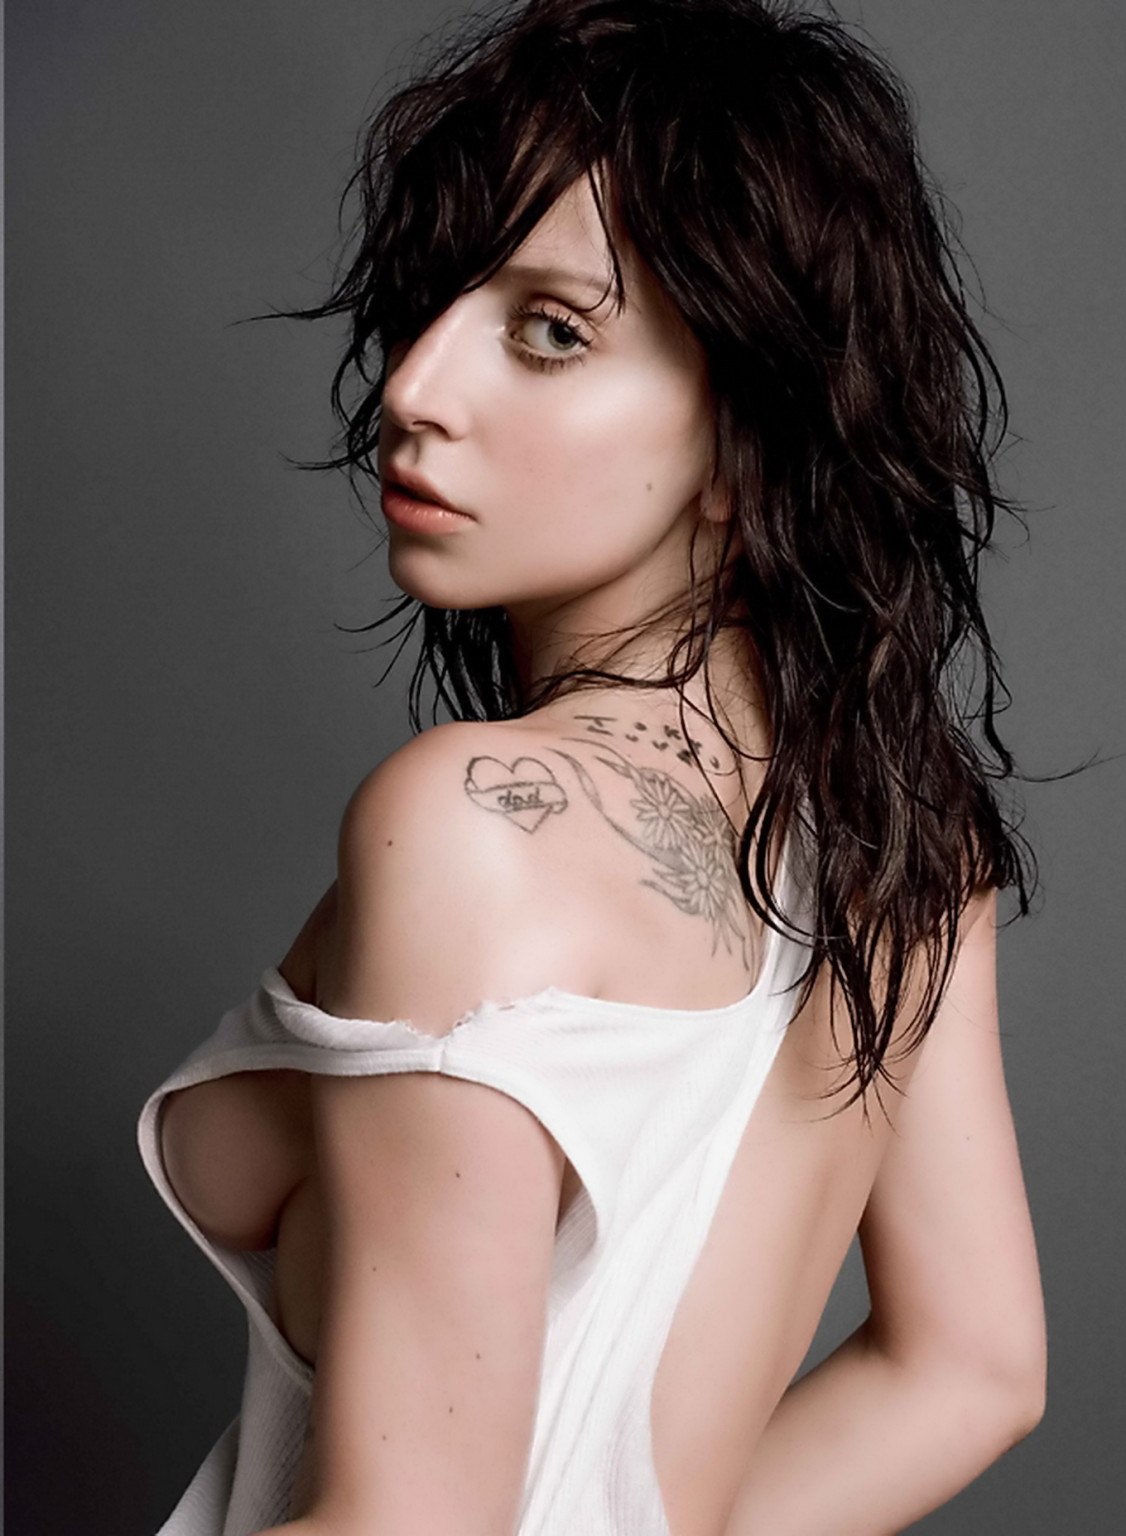 レディー・ガガ、「V magazine」2013年秋号の写真撮影で裸体を披露
 #75219898